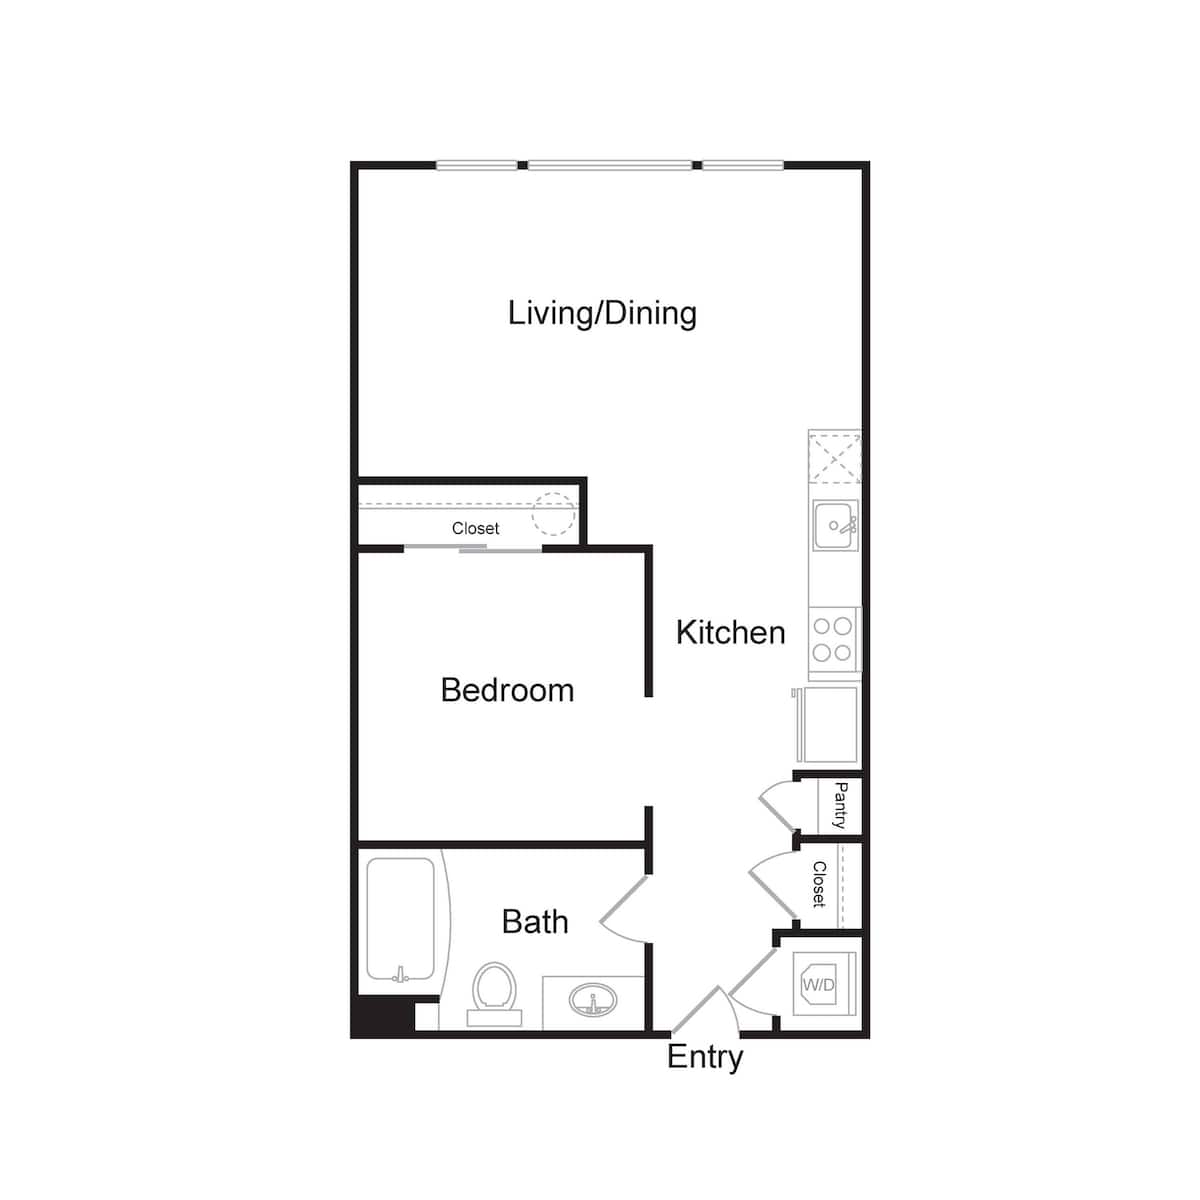 Floorplan diagram for S3, showing 1 bedroom